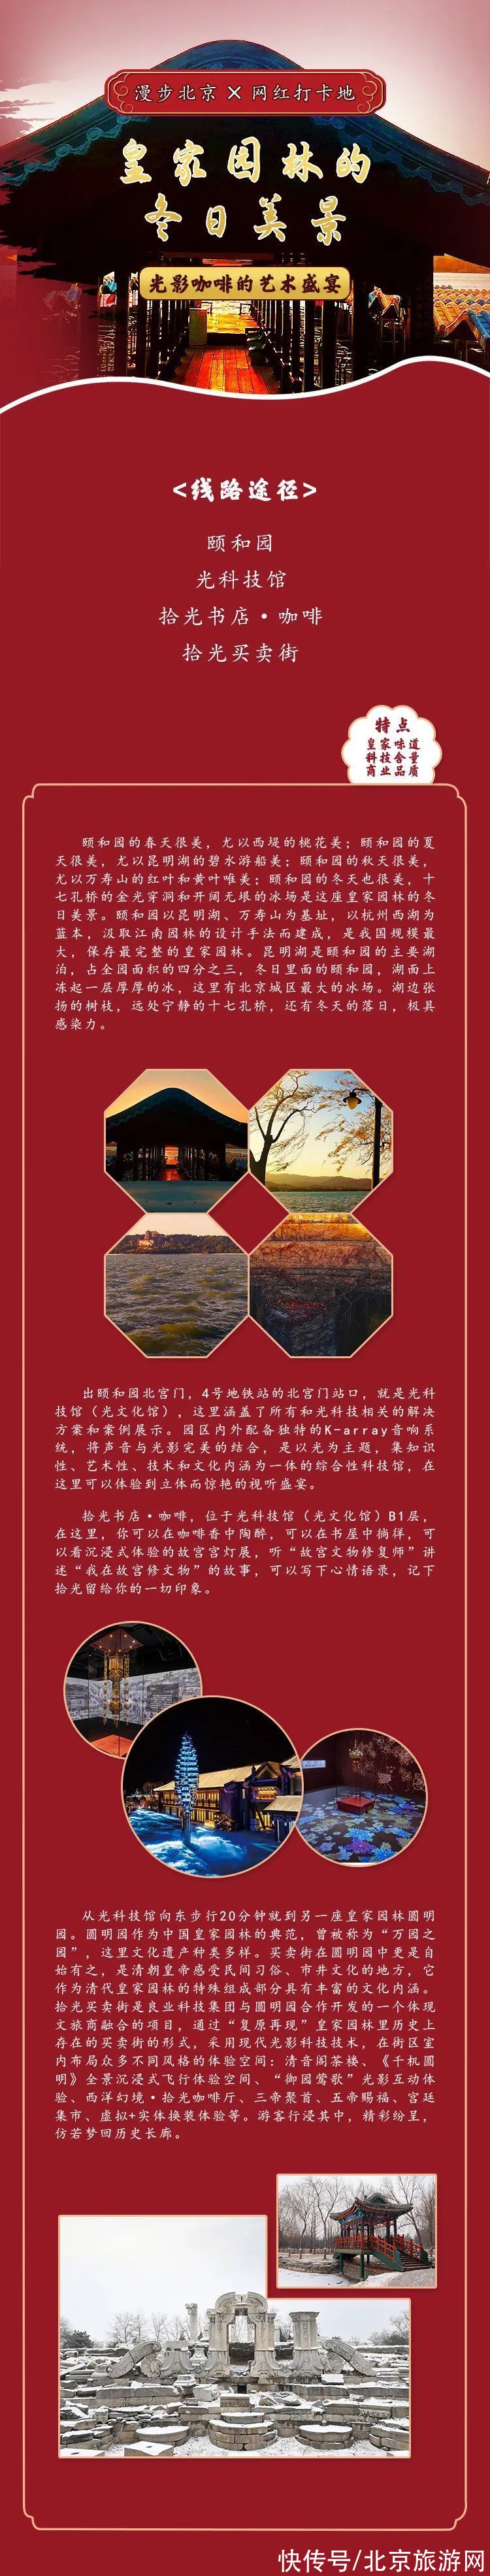 北京市文化和旅游局|北京市文化和旅游局发布的10条潮玩旅游线路长啥样？一图看遍！